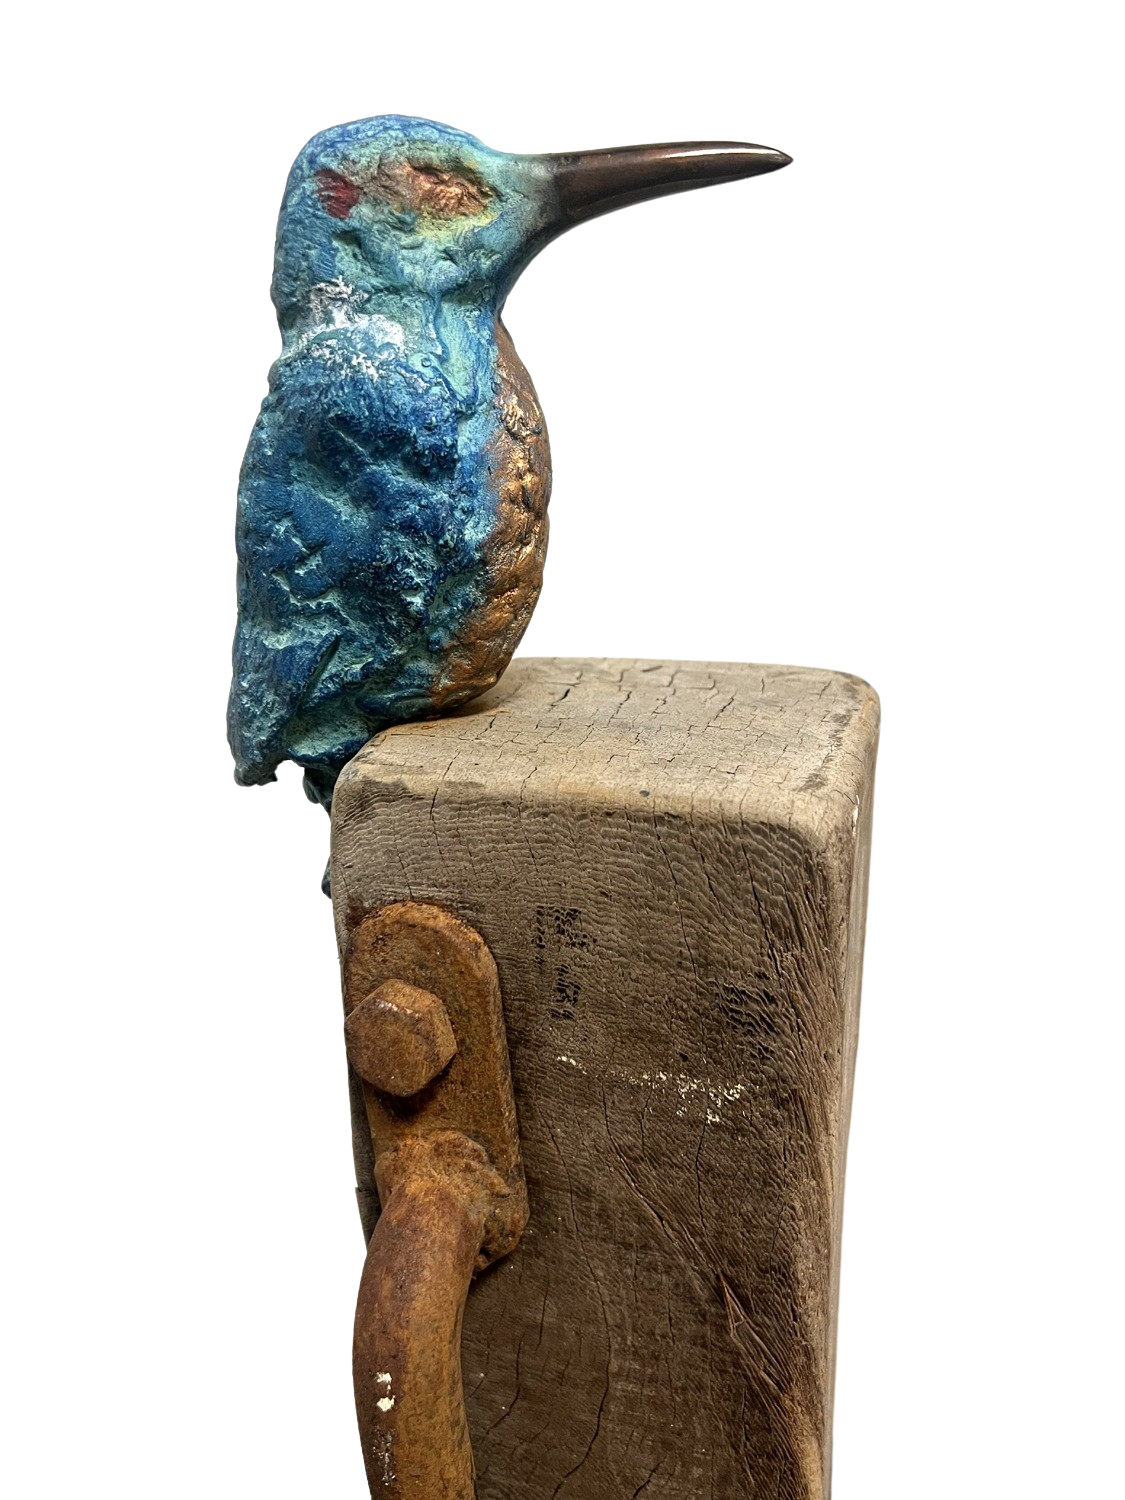 Bronzen ijsvogel (XL) op te koop Betaalbarekunst.nl. Dit bronzen beeld handgemaakt en van Nederlandse